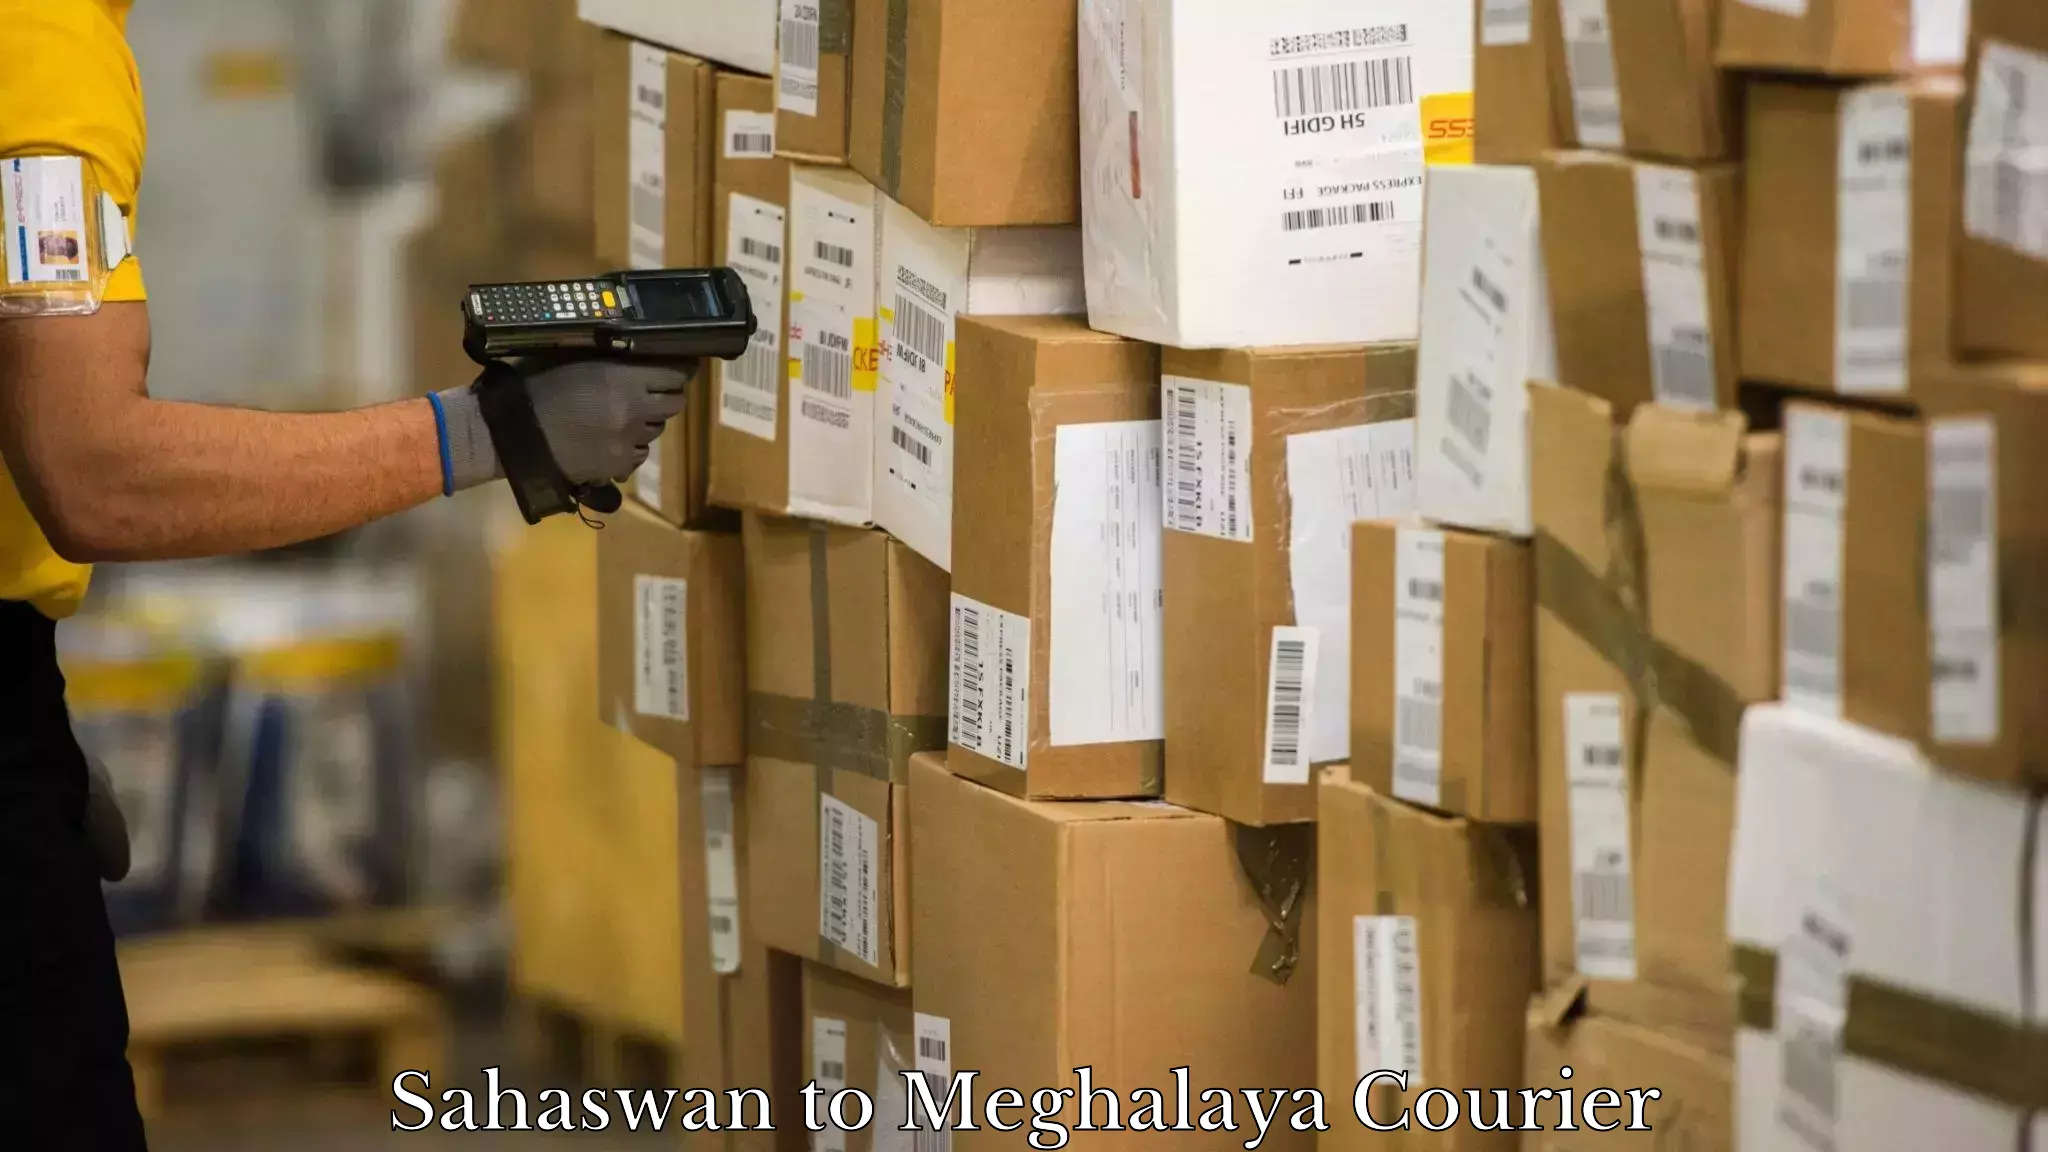 Express mail service Sahaswan to Meghalaya